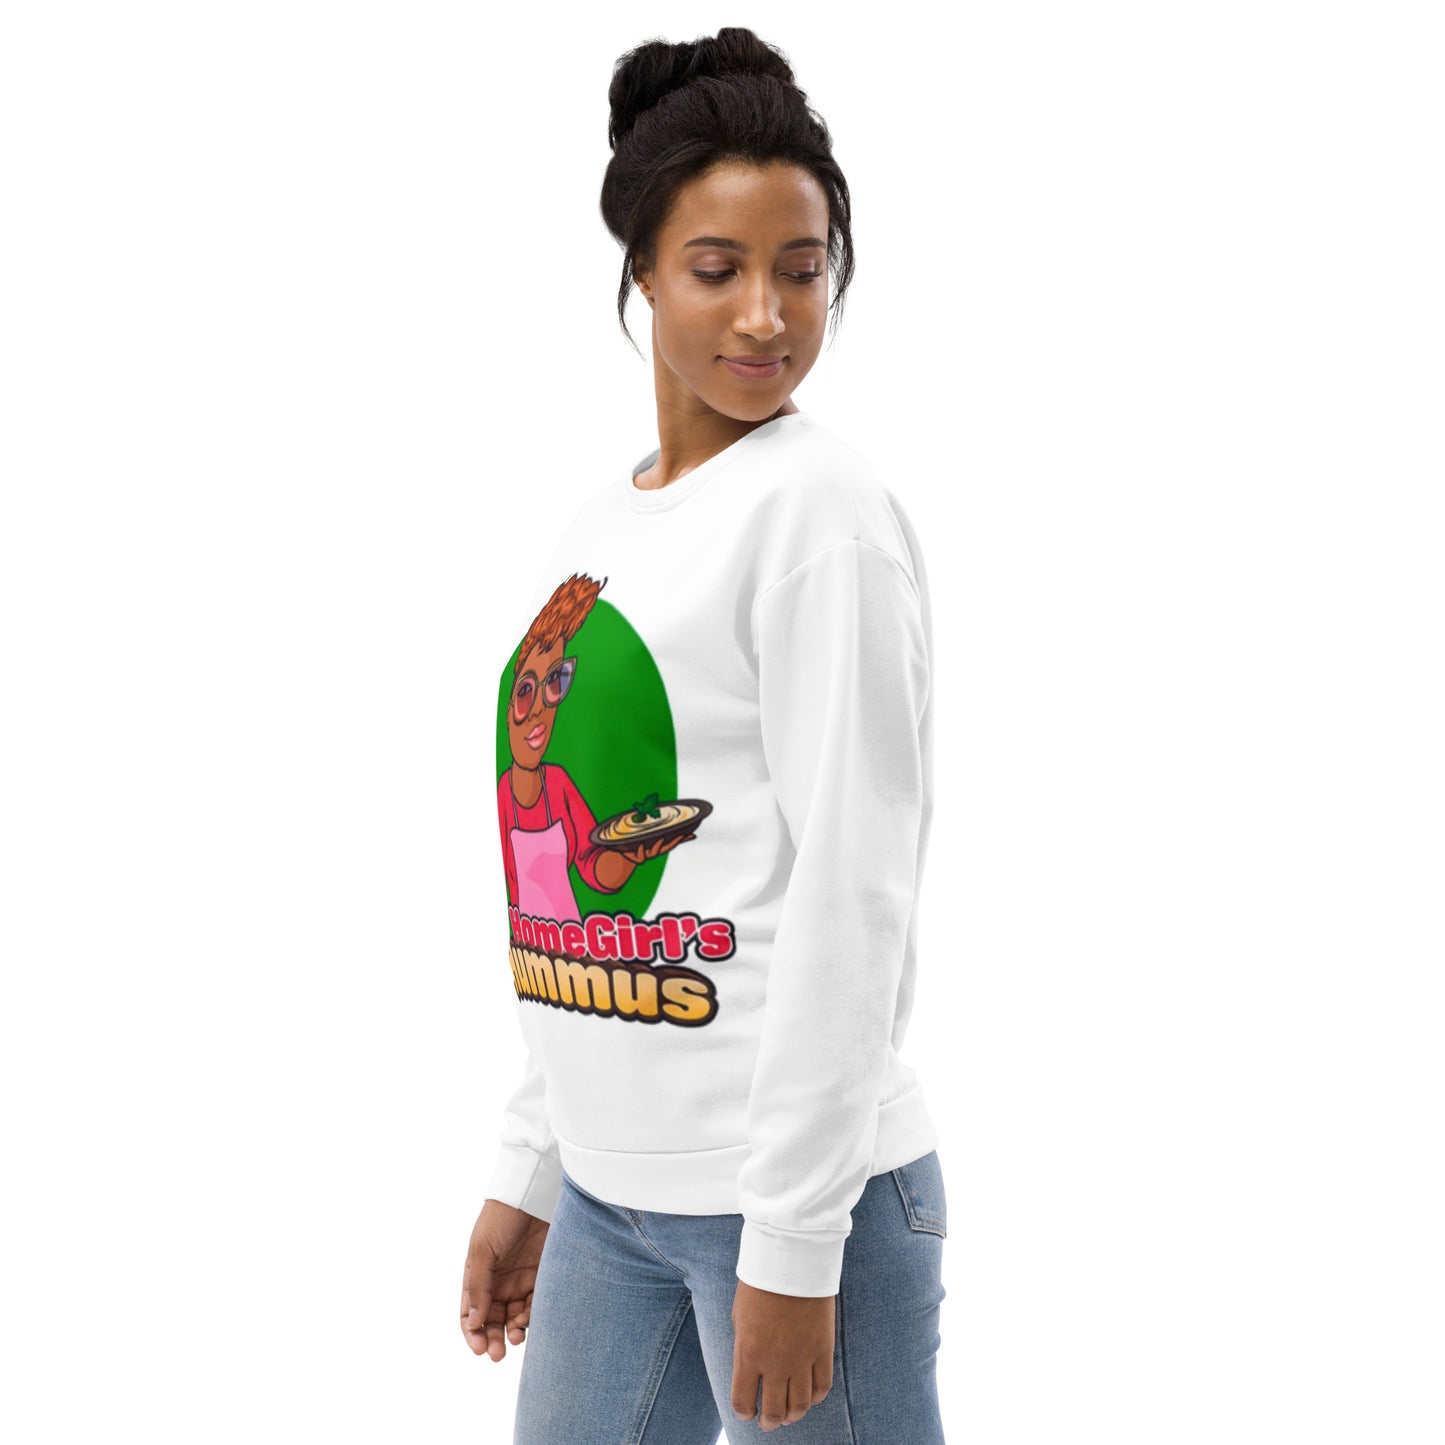 Homegirl's Hummus Unisex Sweatshirt